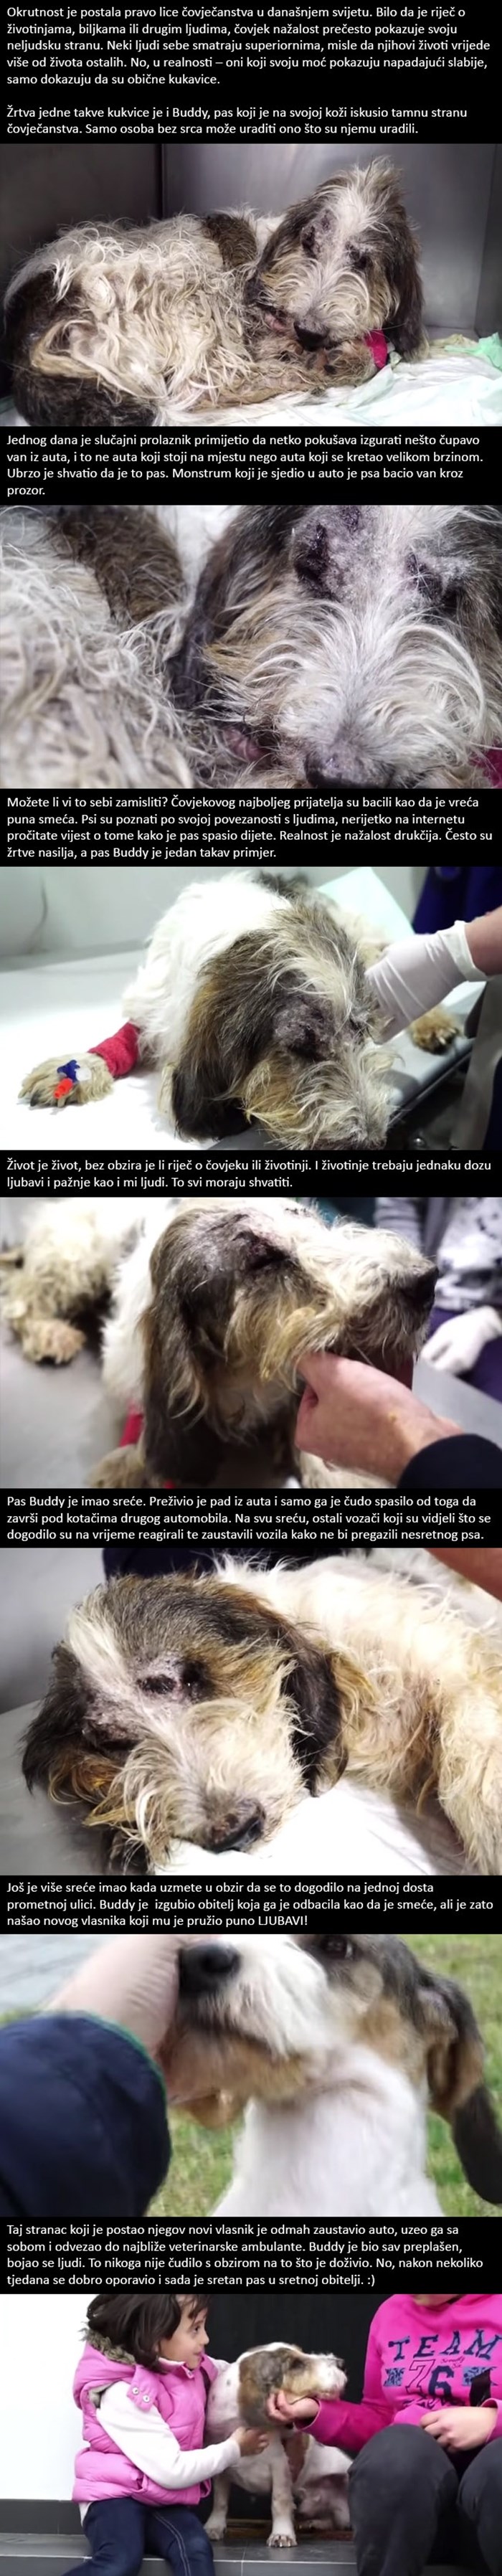 Pročitajte priču o nesretnom psu kojeg je monstrum bacio van iz vozećeg auta